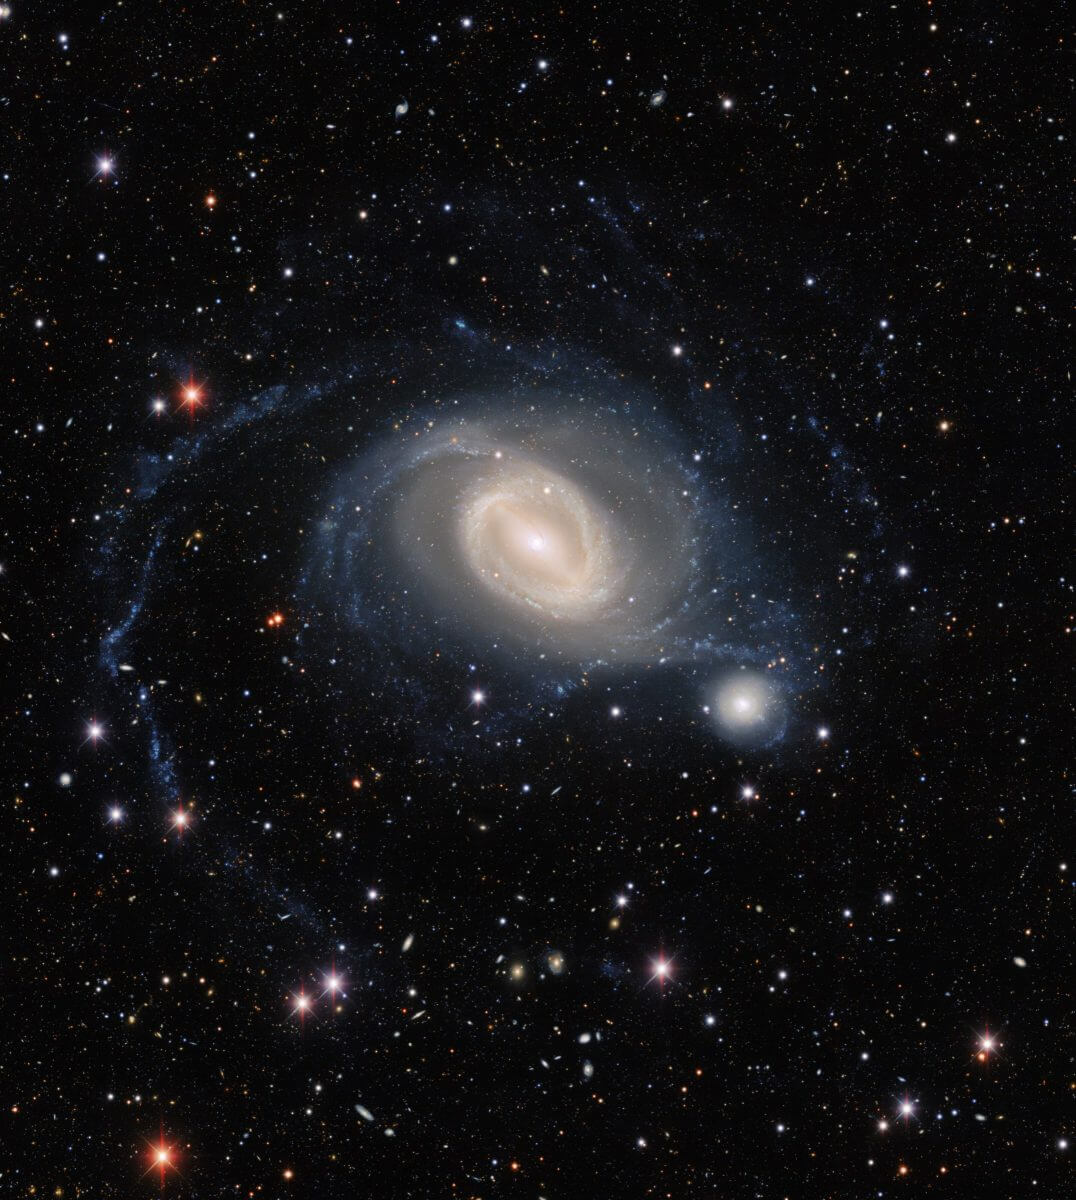 棒渦巻銀河「NGC 1512」とレンズ状銀河「NGC 1510」。大きなほうがNGC 1512で、その右下にNGC 1510が見えている（Credit: Dark Energy Survey/DOE/FNAL/DECam/CTIO/NOIRLab/NSF/AURA; Image processing: T.A. Rector (University of Alaska Anchorage/NSF’s NOIRLab), J. Miller (Gemini Observatory/NSF’s NOIRLab), M. Zamani & D. de Martin (NSF’s NOIRLab)）